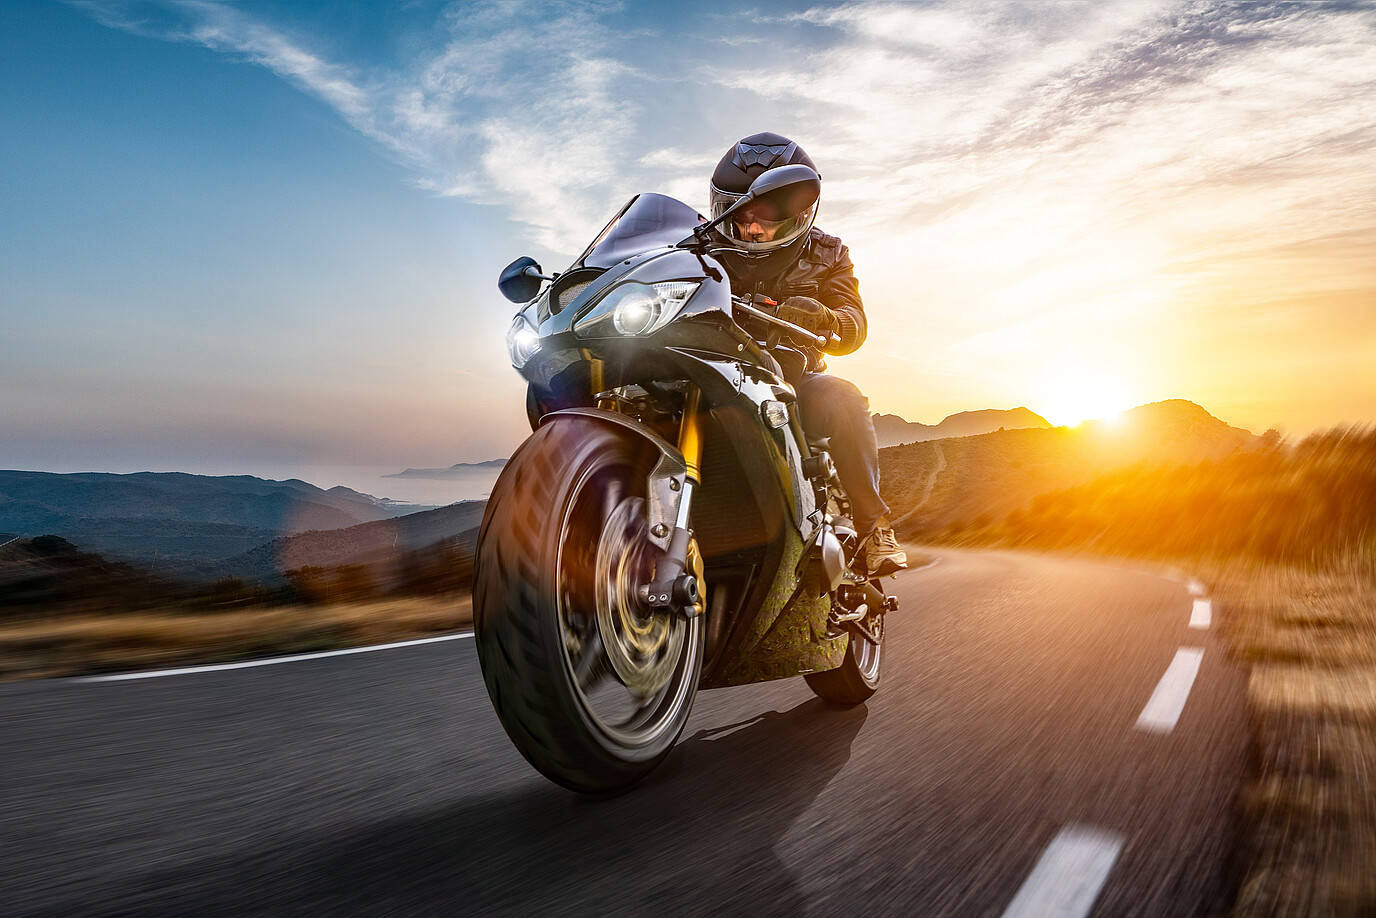 Motorradfahrer fährt auf einer Straße mit dem Sonnenuntergang im Hintergrund